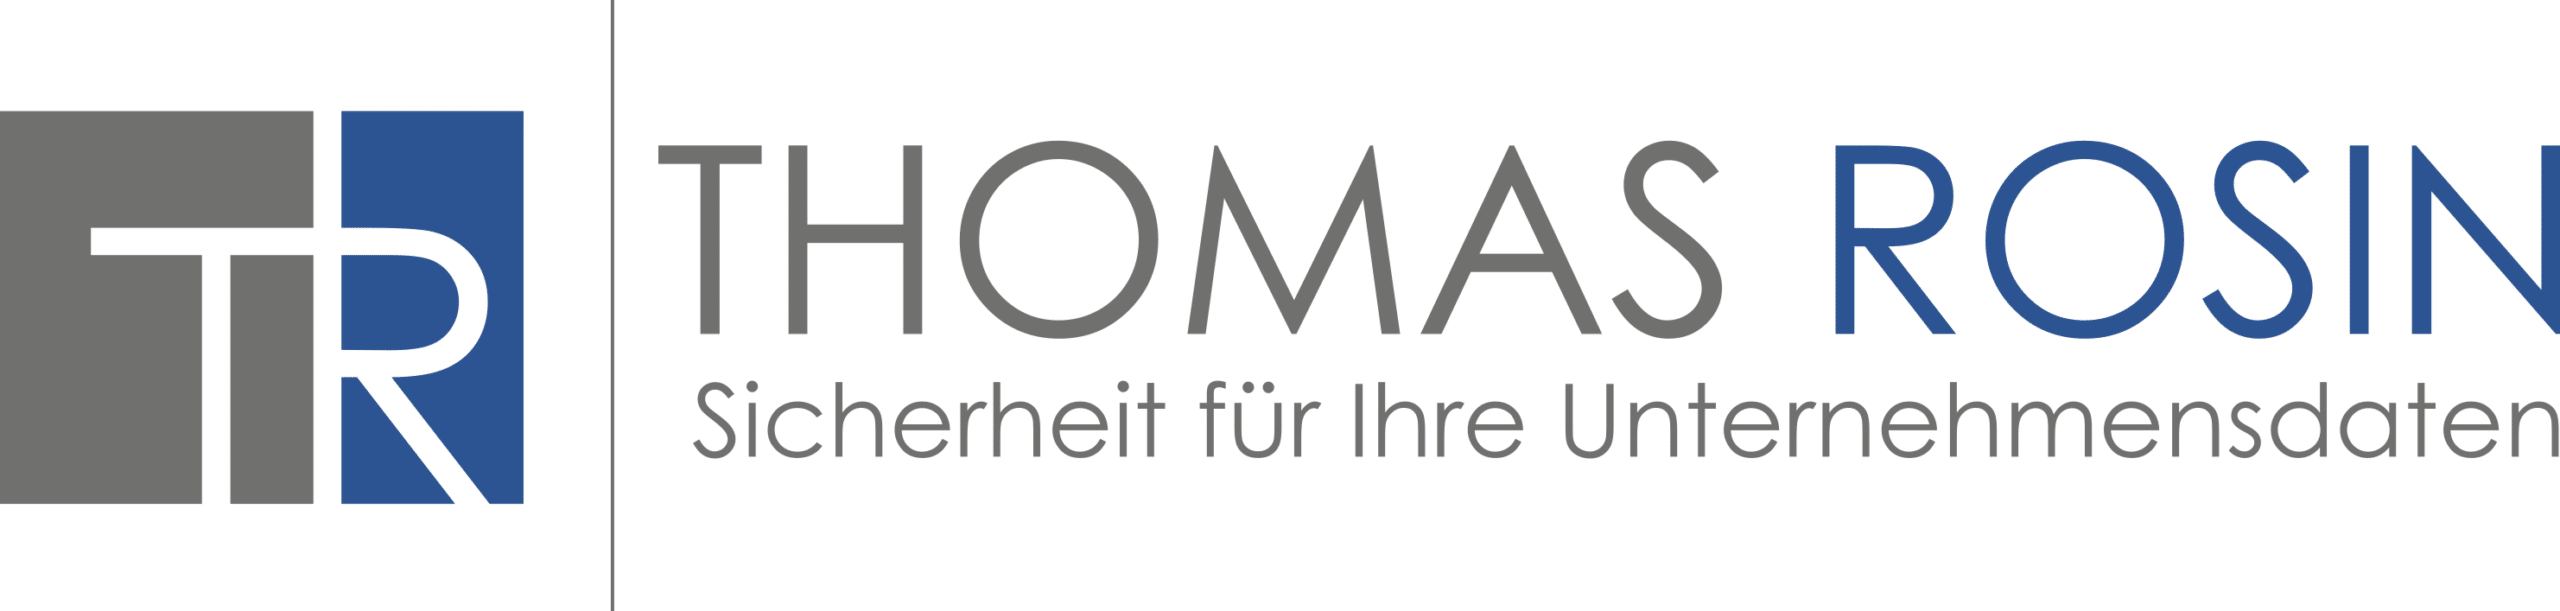 Thomas Rosin Logo